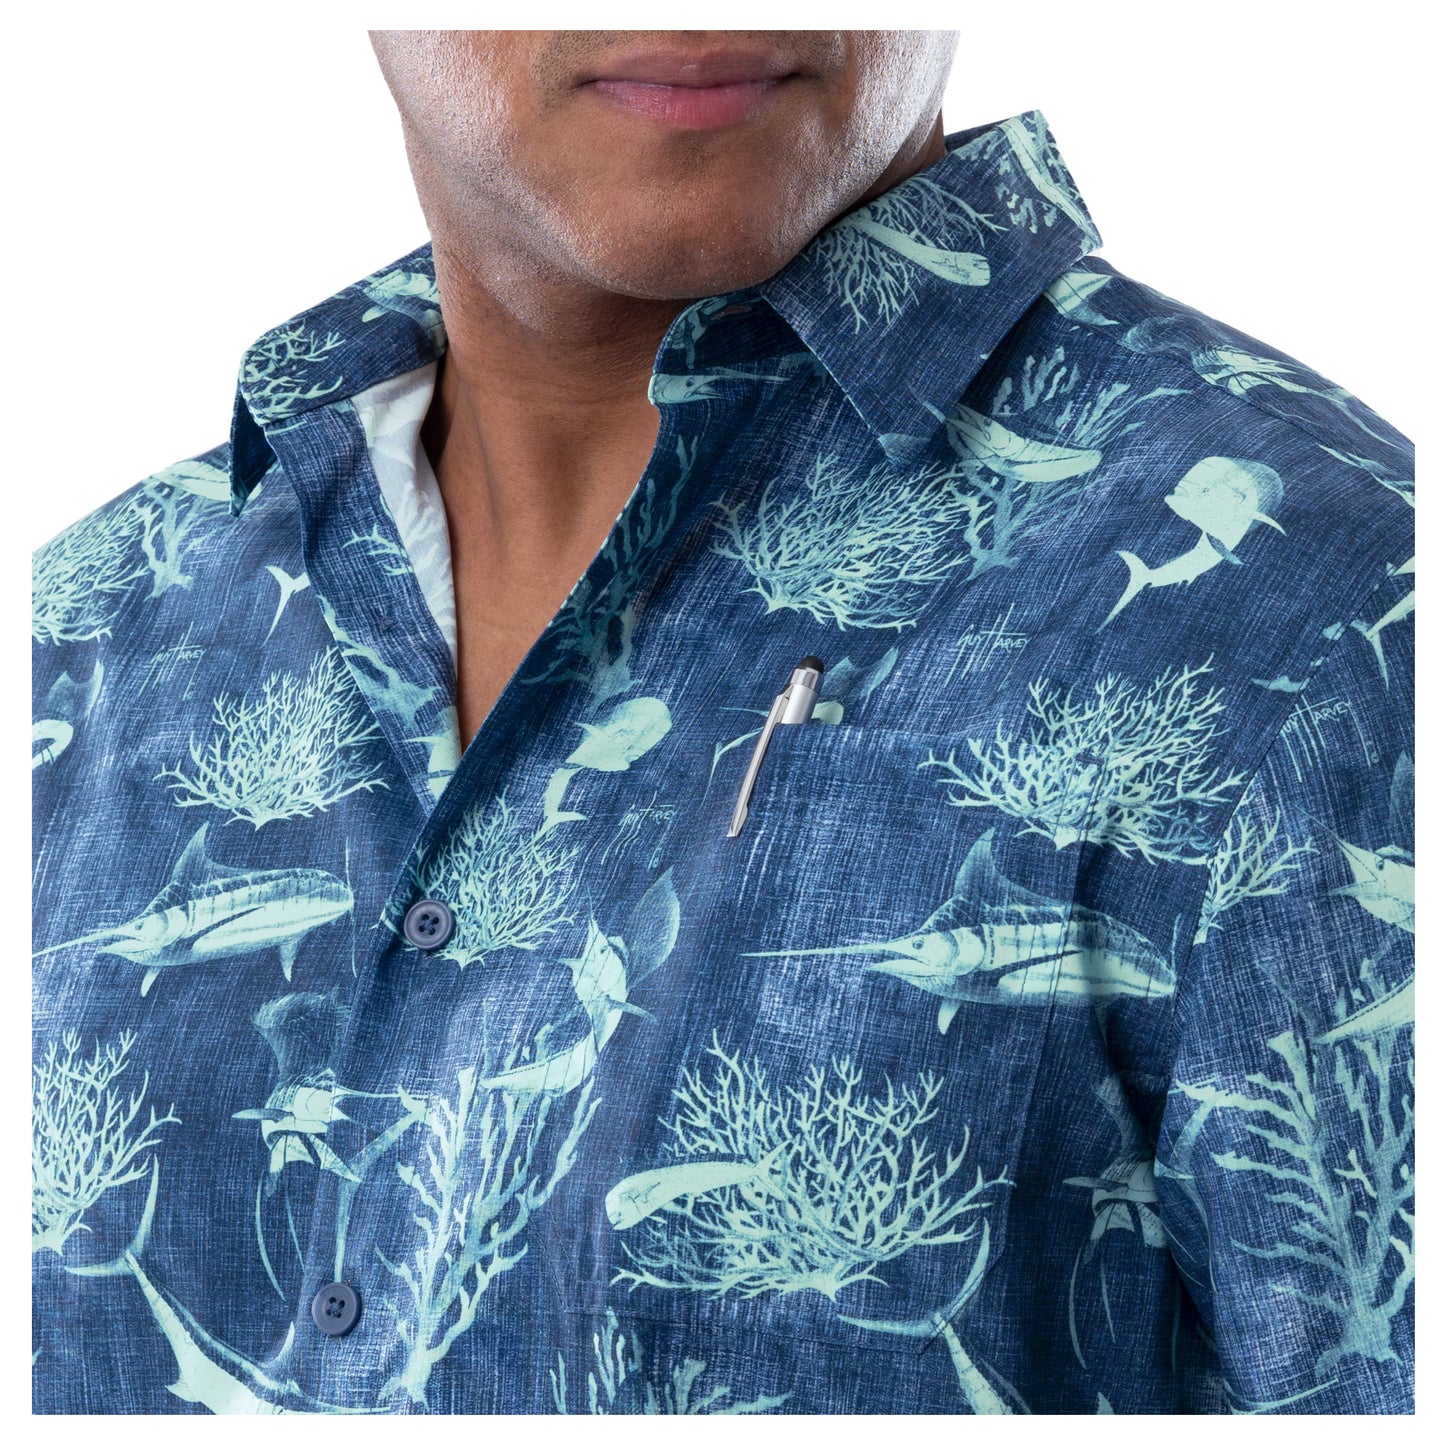 Men's Denim Shells Short Sleeve Fishing Shirt – Guy Harvey